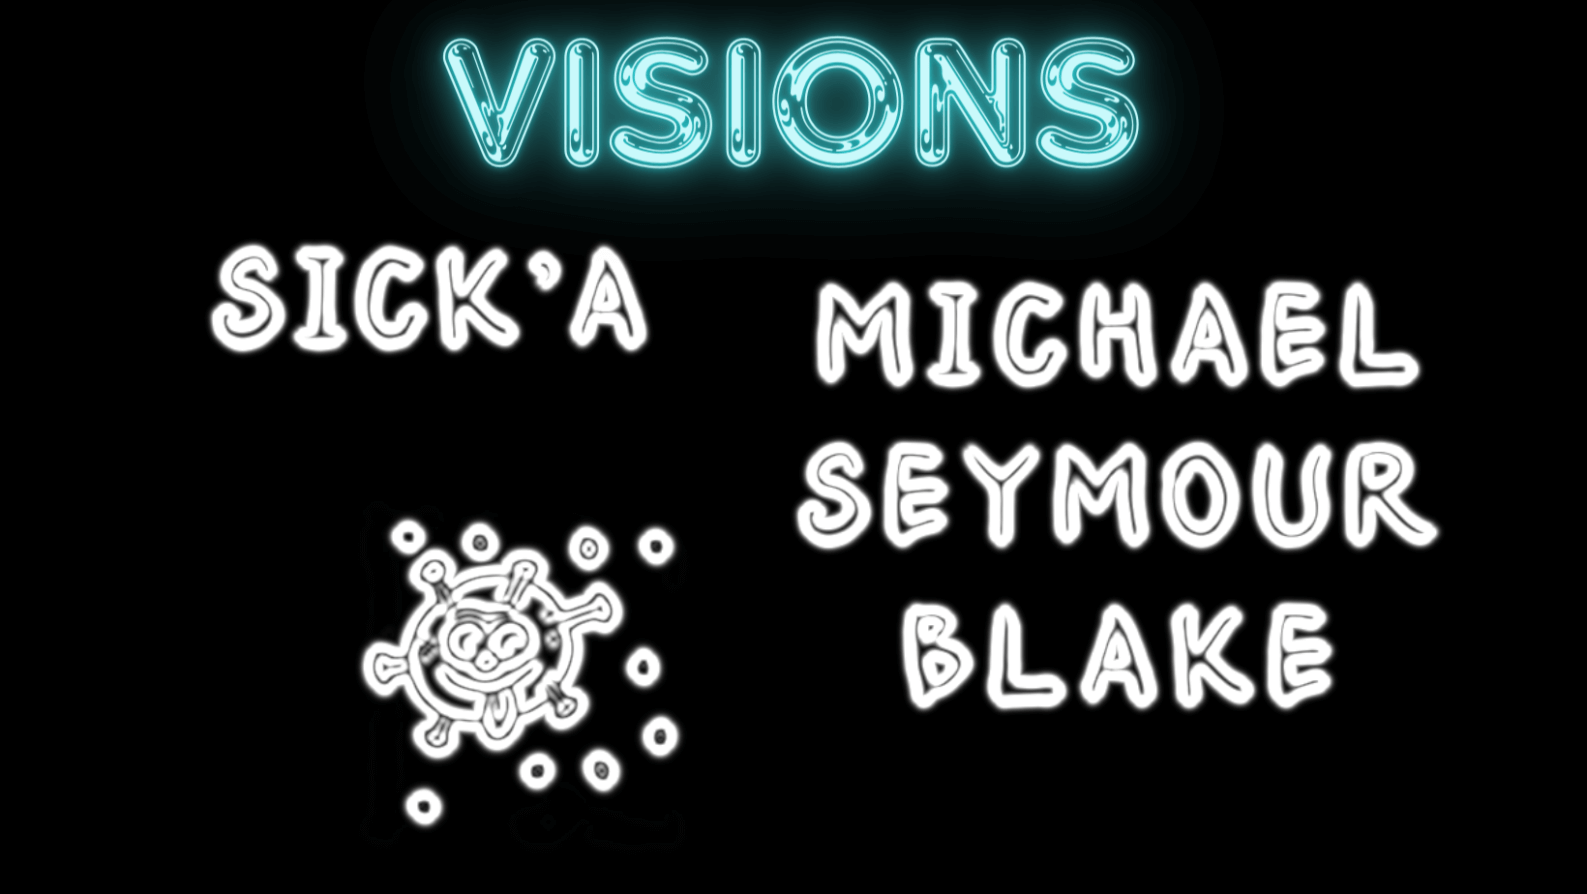 VISIONS: Sick’a by Michael Seymour Blake